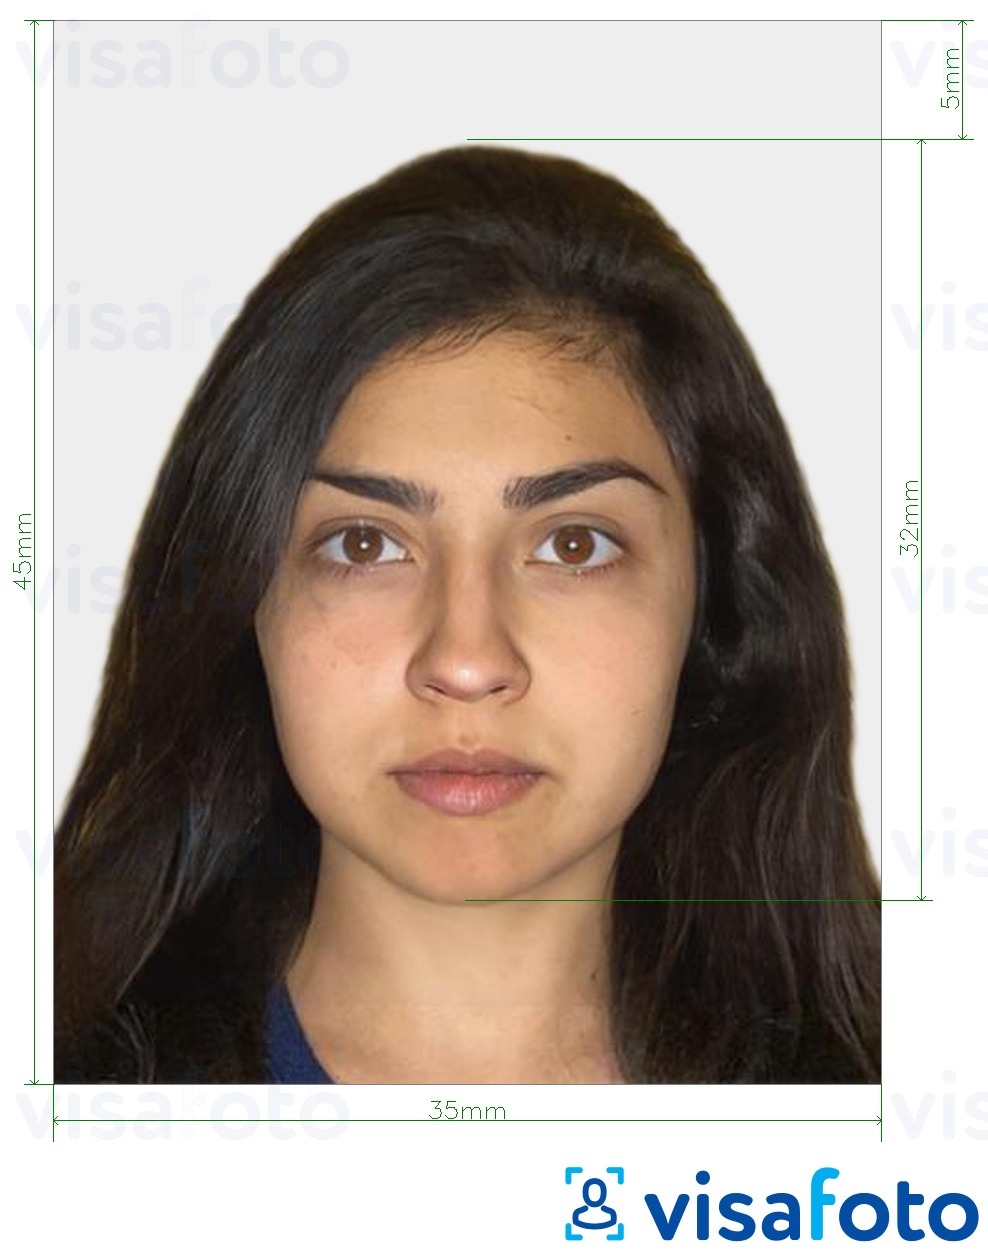 Exemplu de fotografie pentru Israel Pașaport 35x45 mm (3,5x4,5 cm) cu aceeași dimensiune indicată